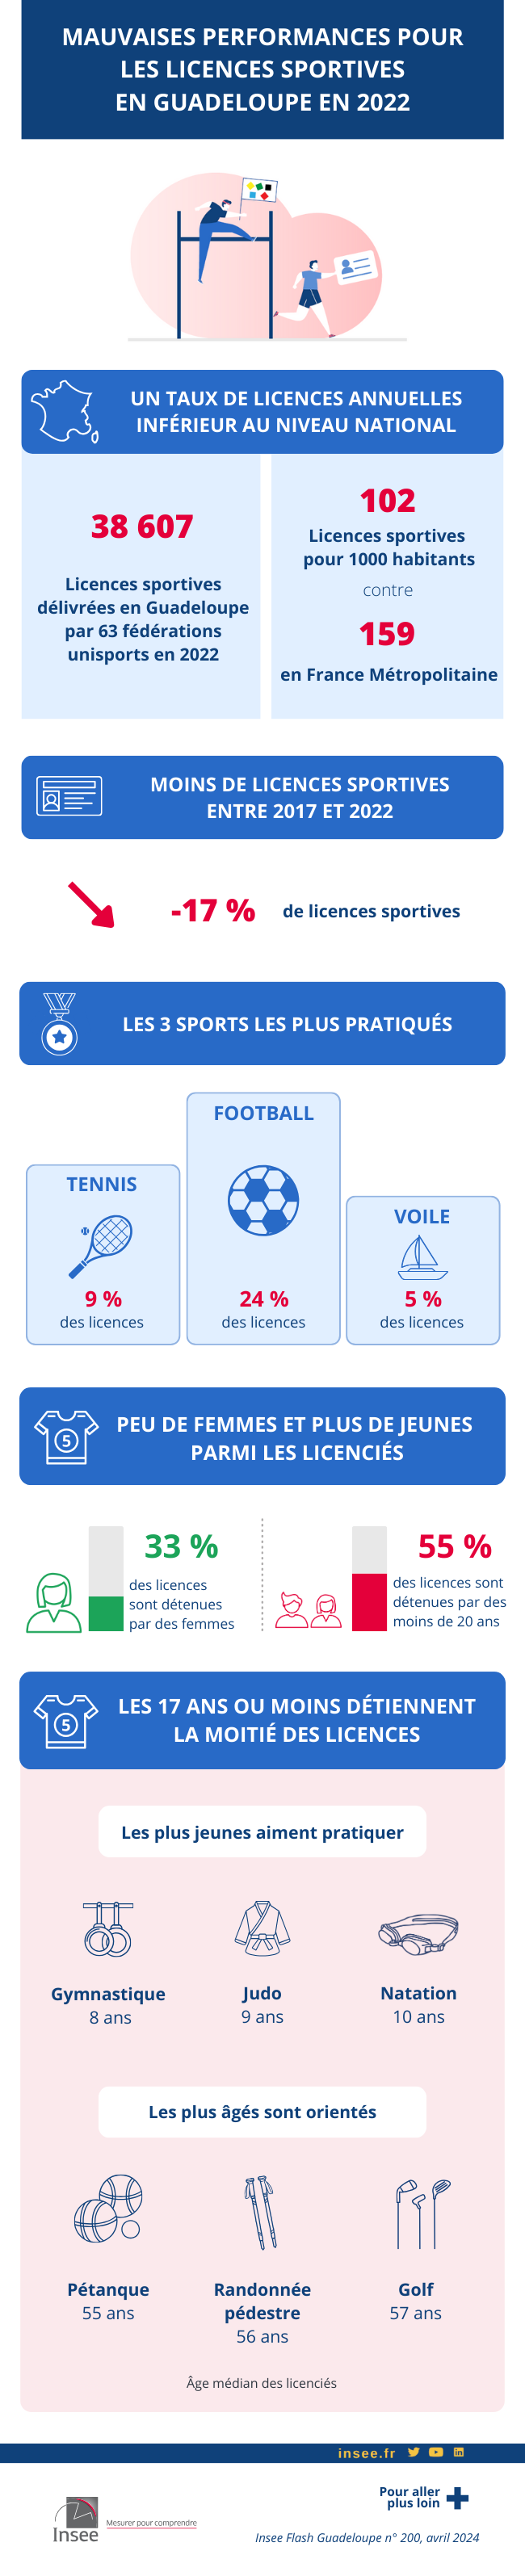 Infographie sur le sport en Guadeloupe en 2022